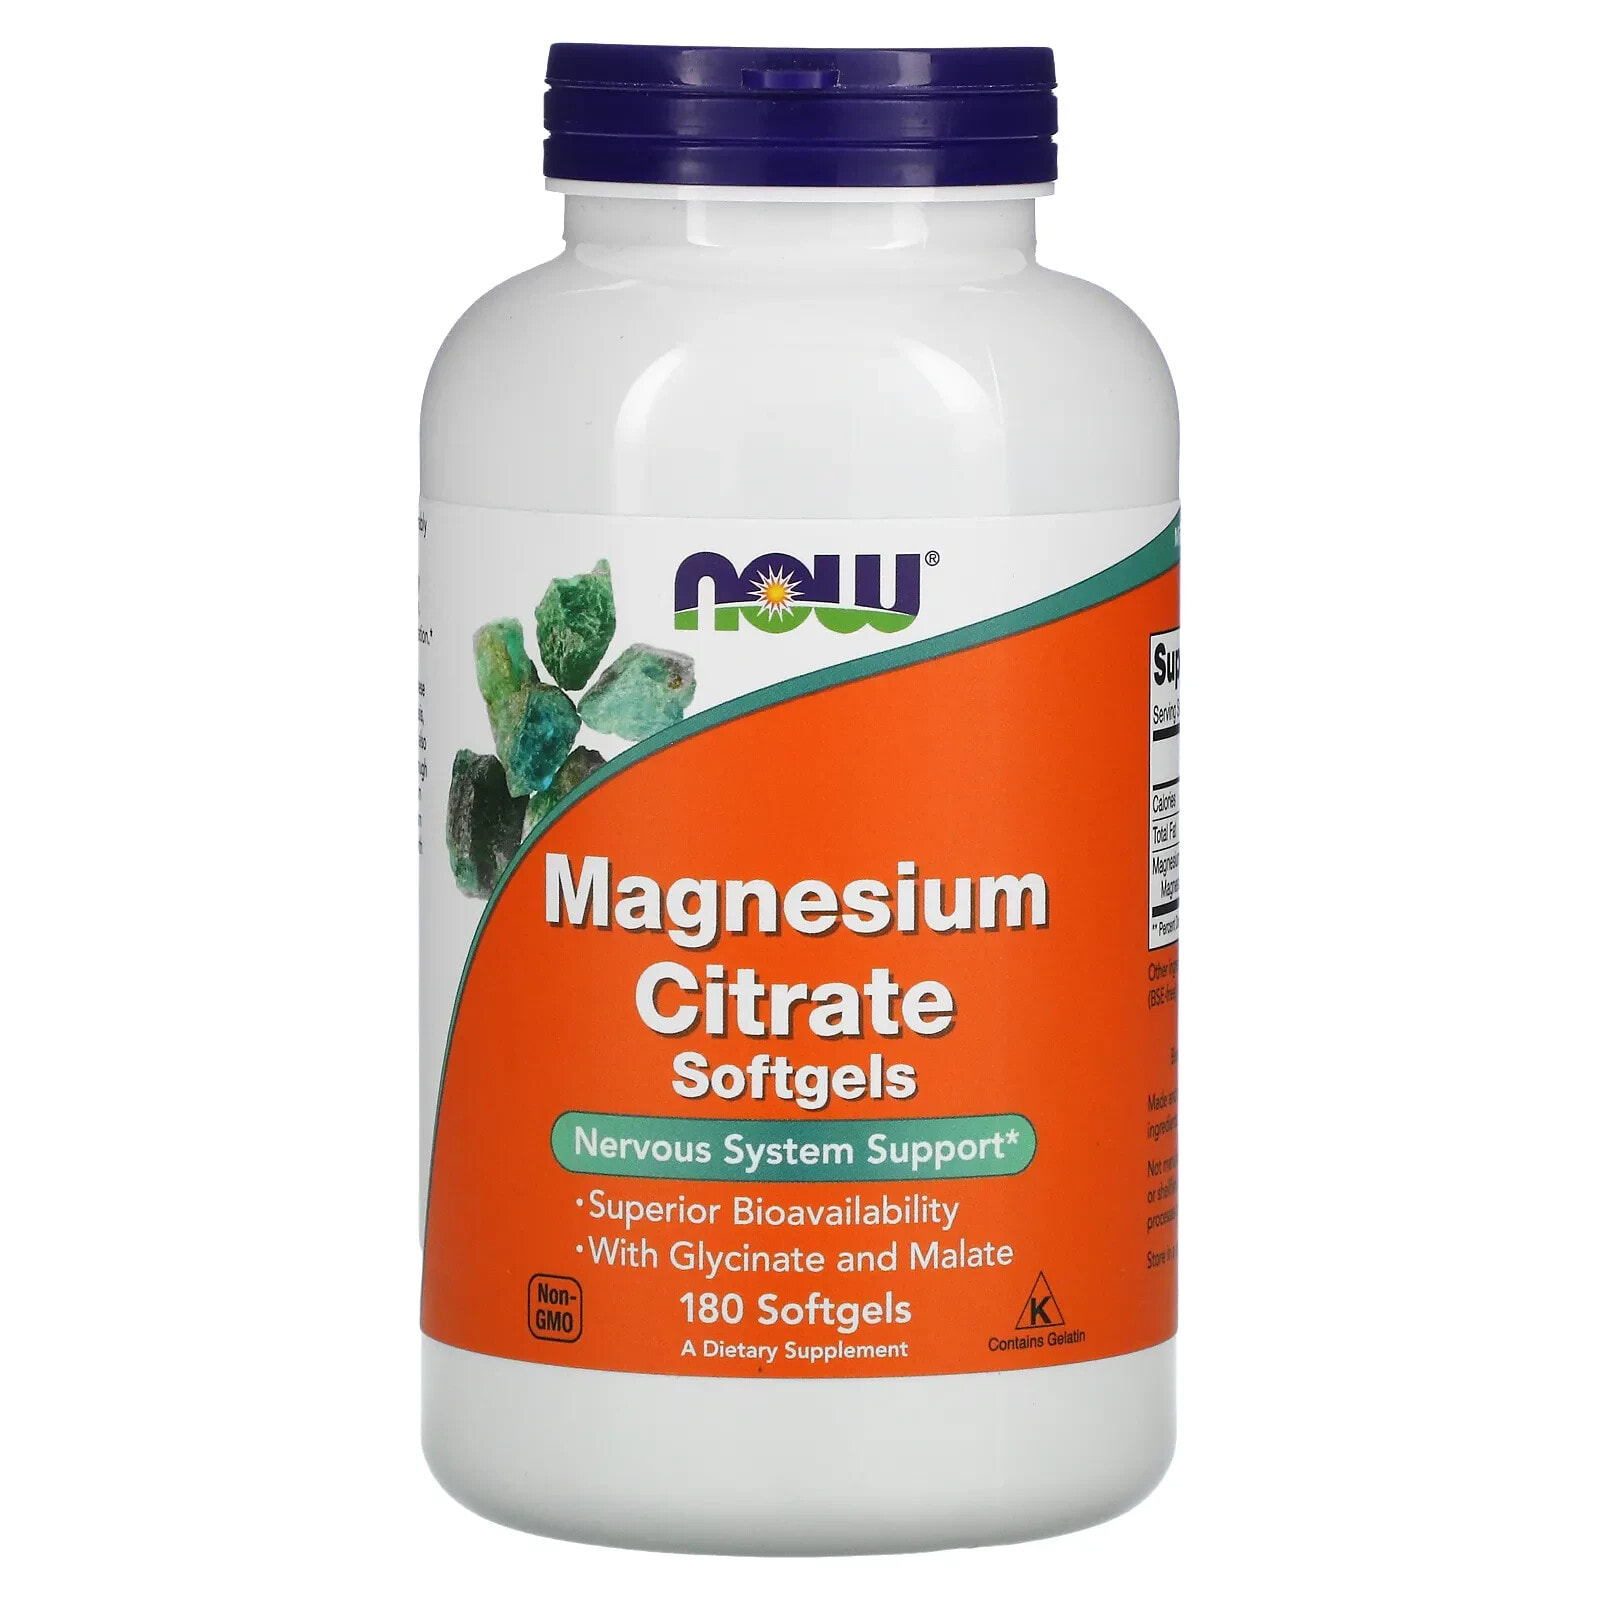 NOW Foods Magnesium Citrate Цитрат магния для поддержки нервной системы 180 гелевых капсул